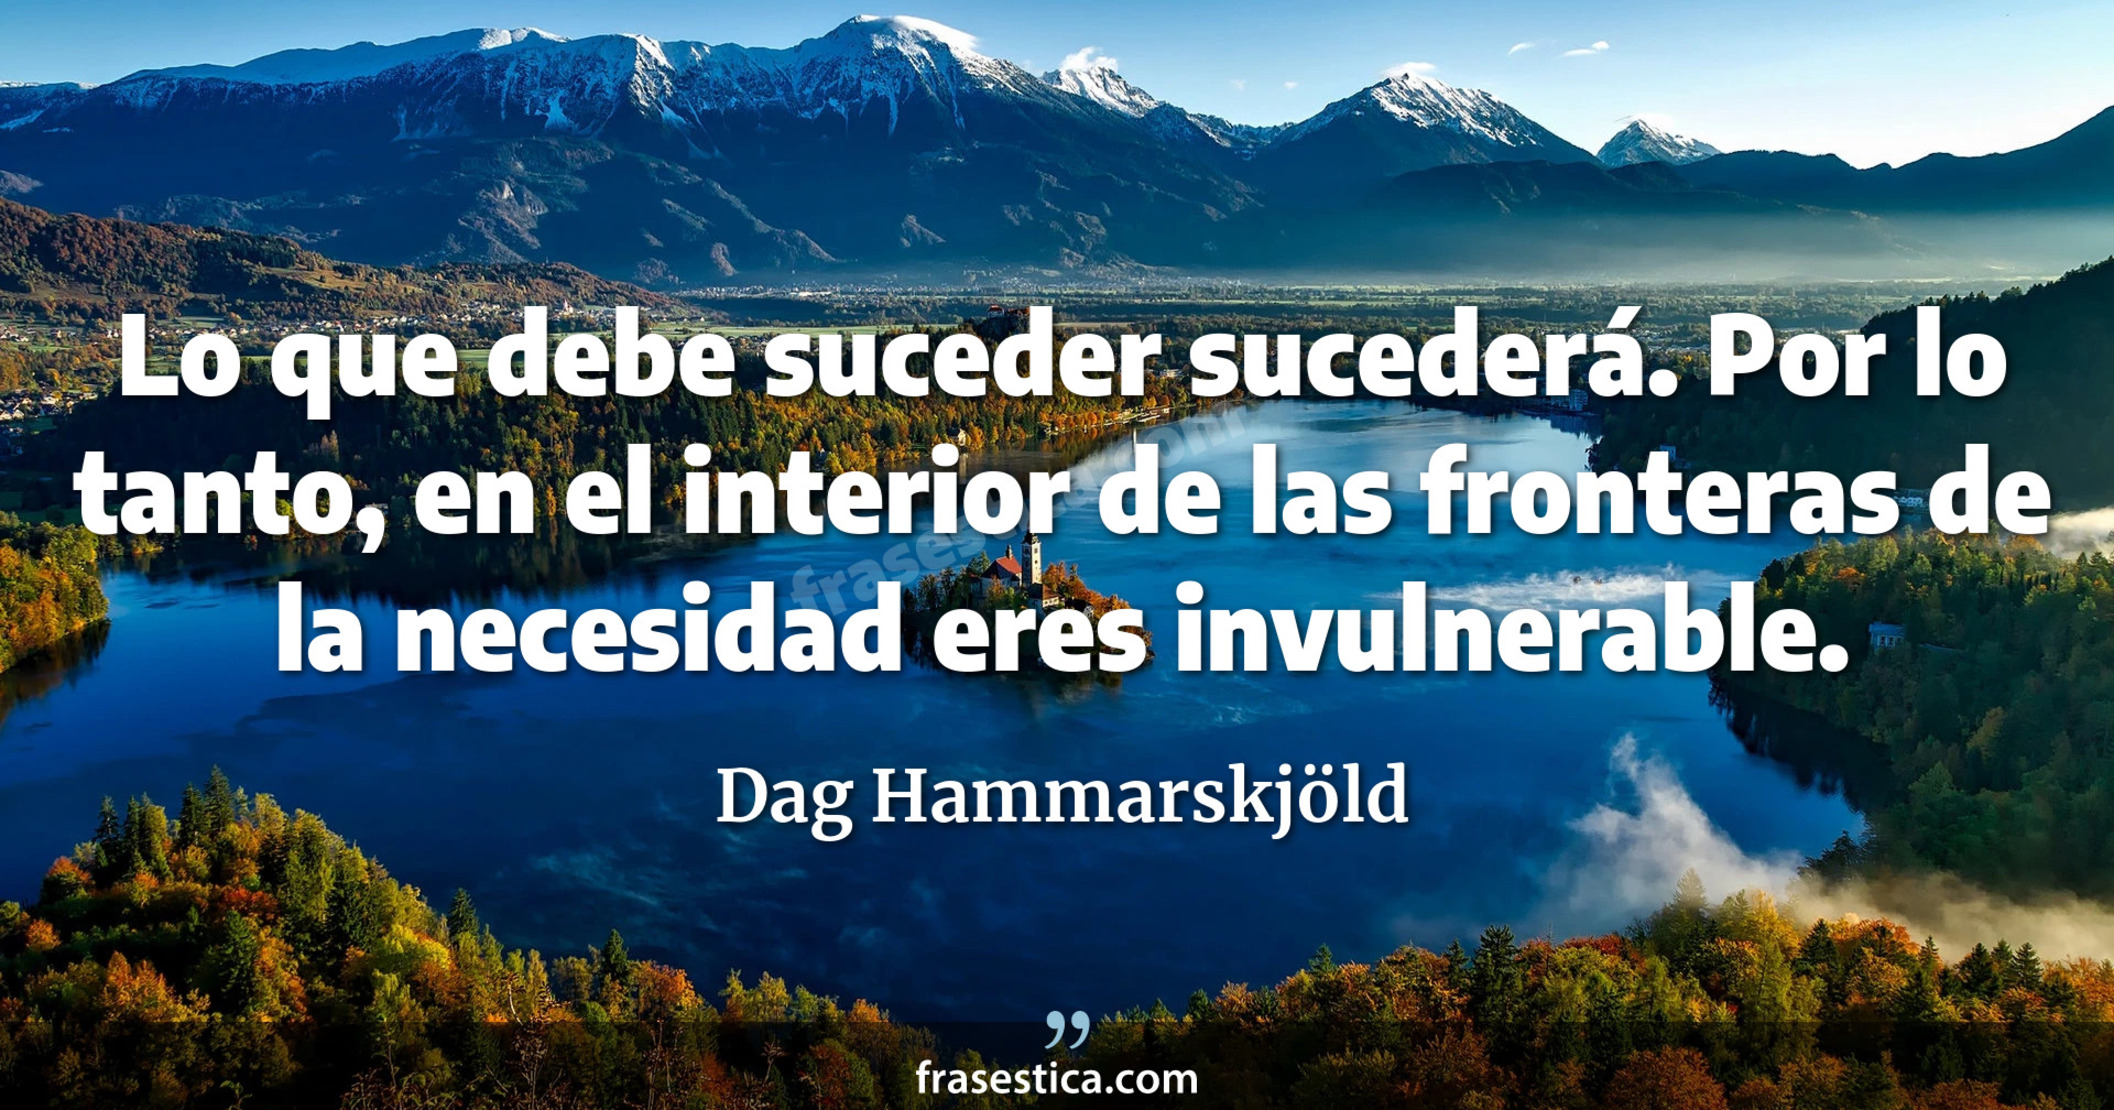 Lo que debe suceder sucederá. Por lo tanto, en el interior de las fronteras de la necesidad eres invulnerable. - Dag Hammarskjöld